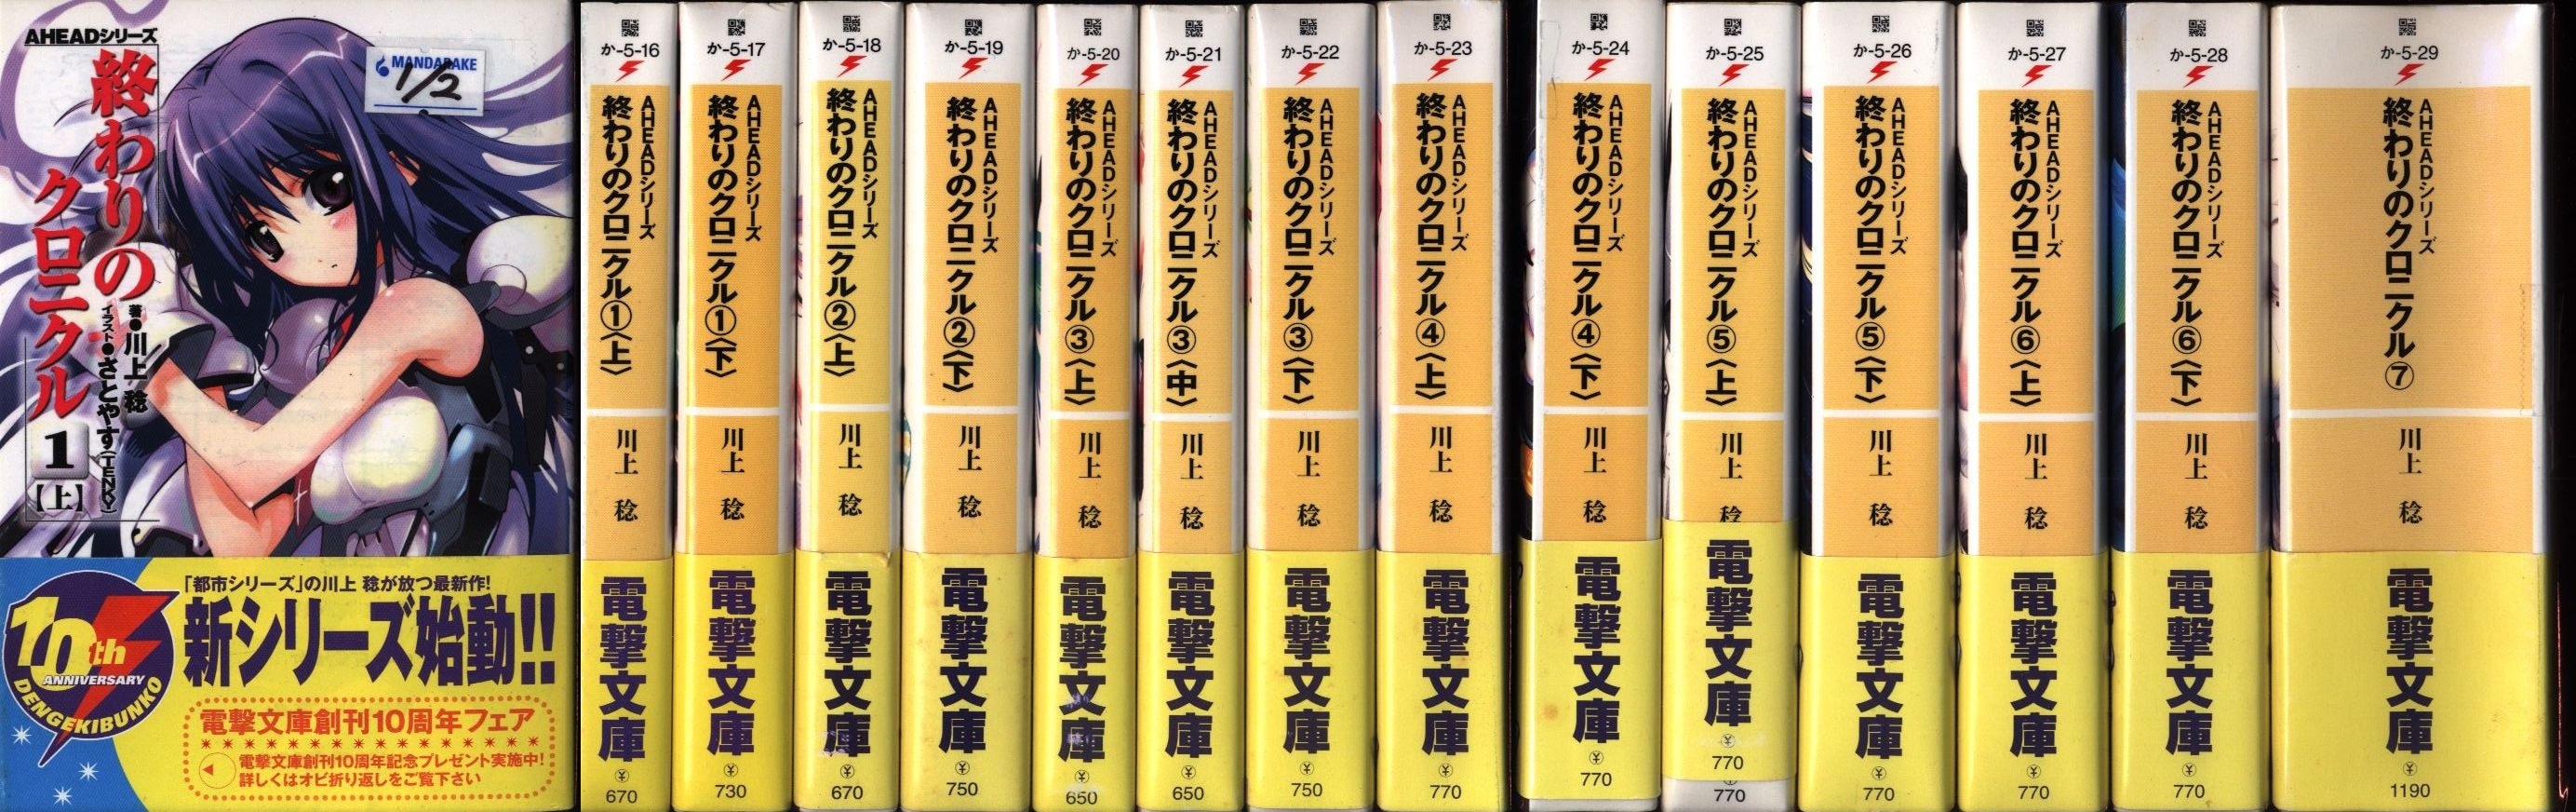 アスキーメディアワークス 電撃文庫 川上稔 終わりのクロニクル 全14巻セット まんだらけ Mandarake